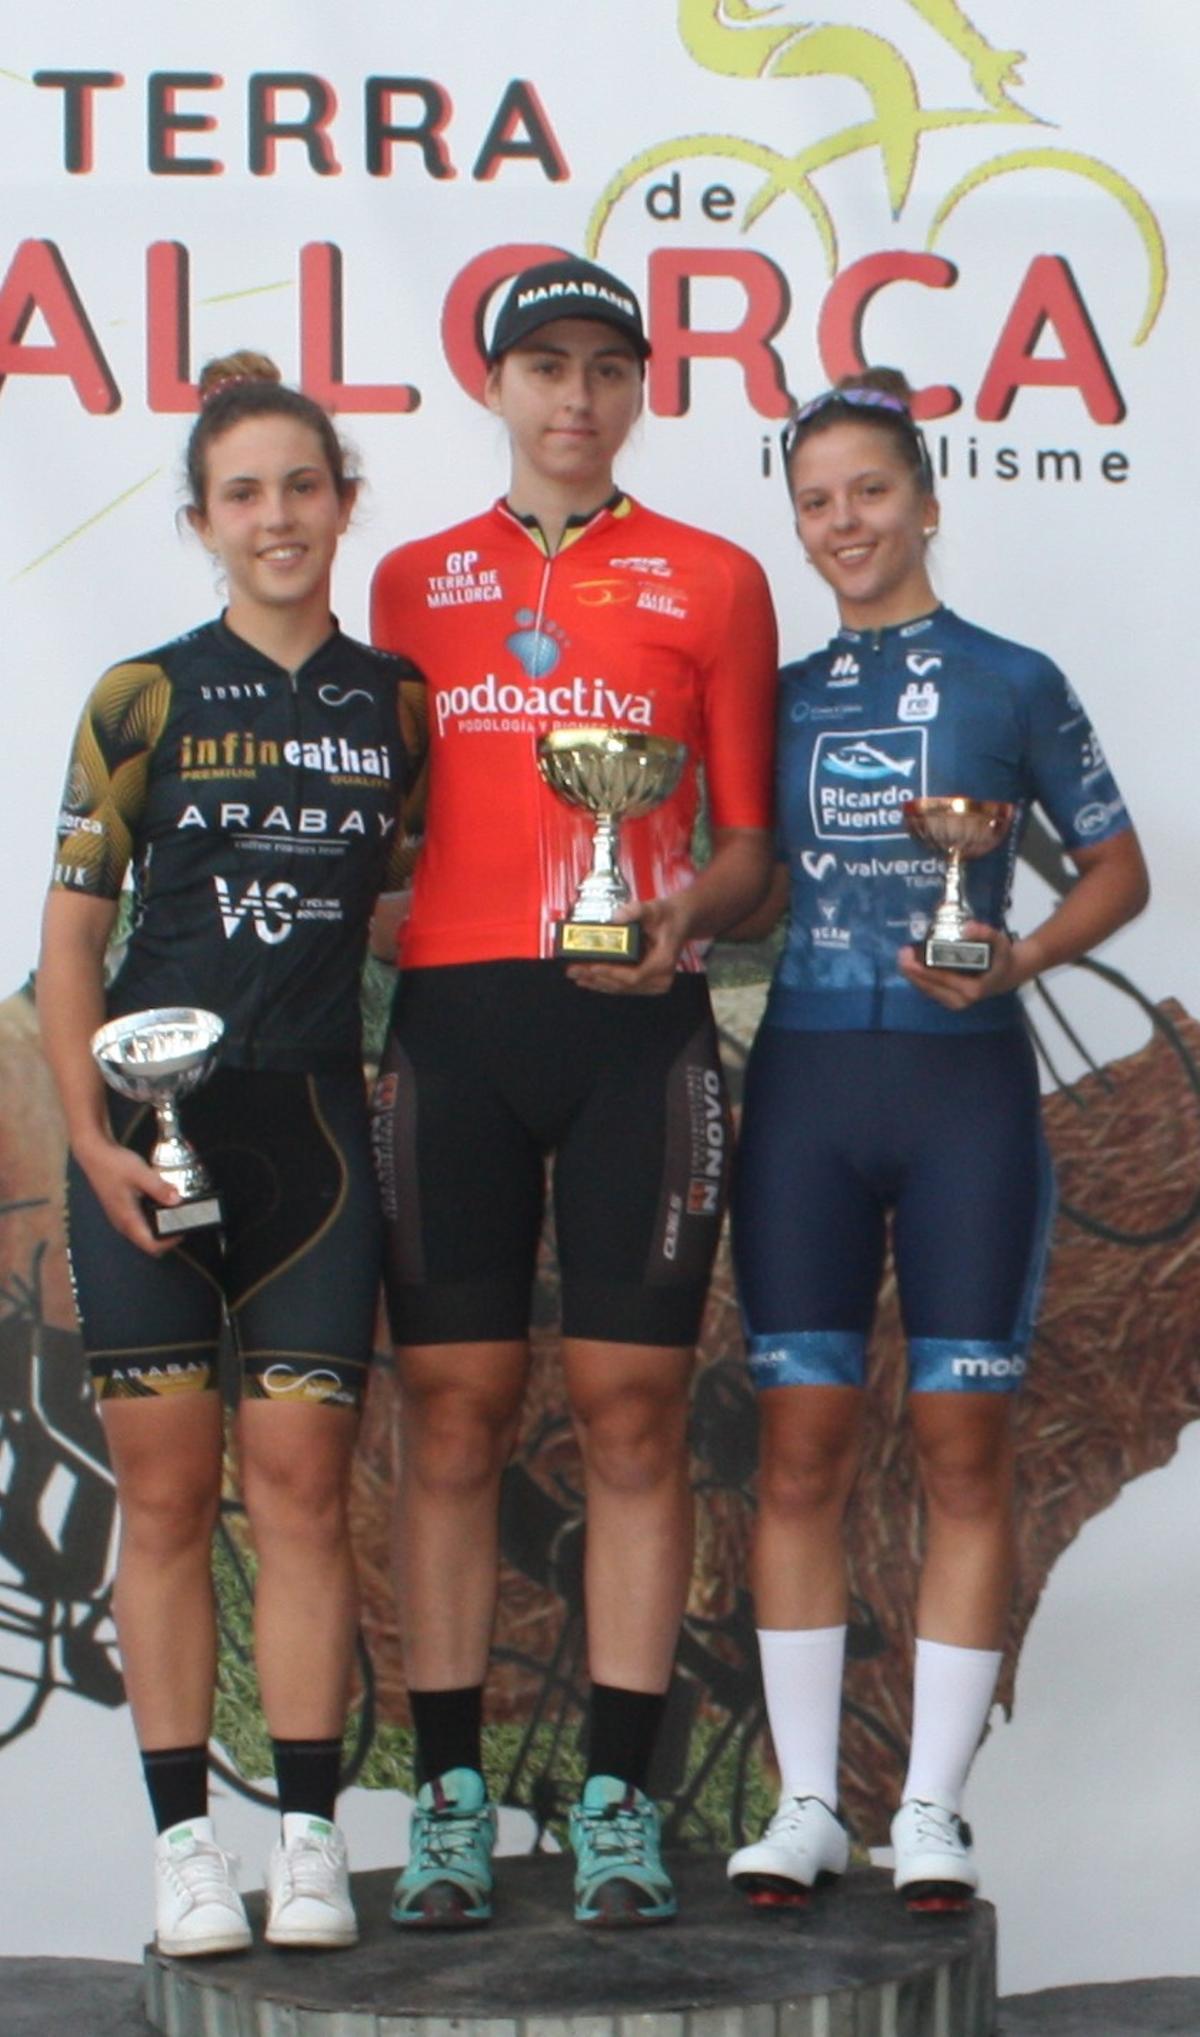 Ciclismo. Podio femenino del Gran Premi Terra de Mallorca